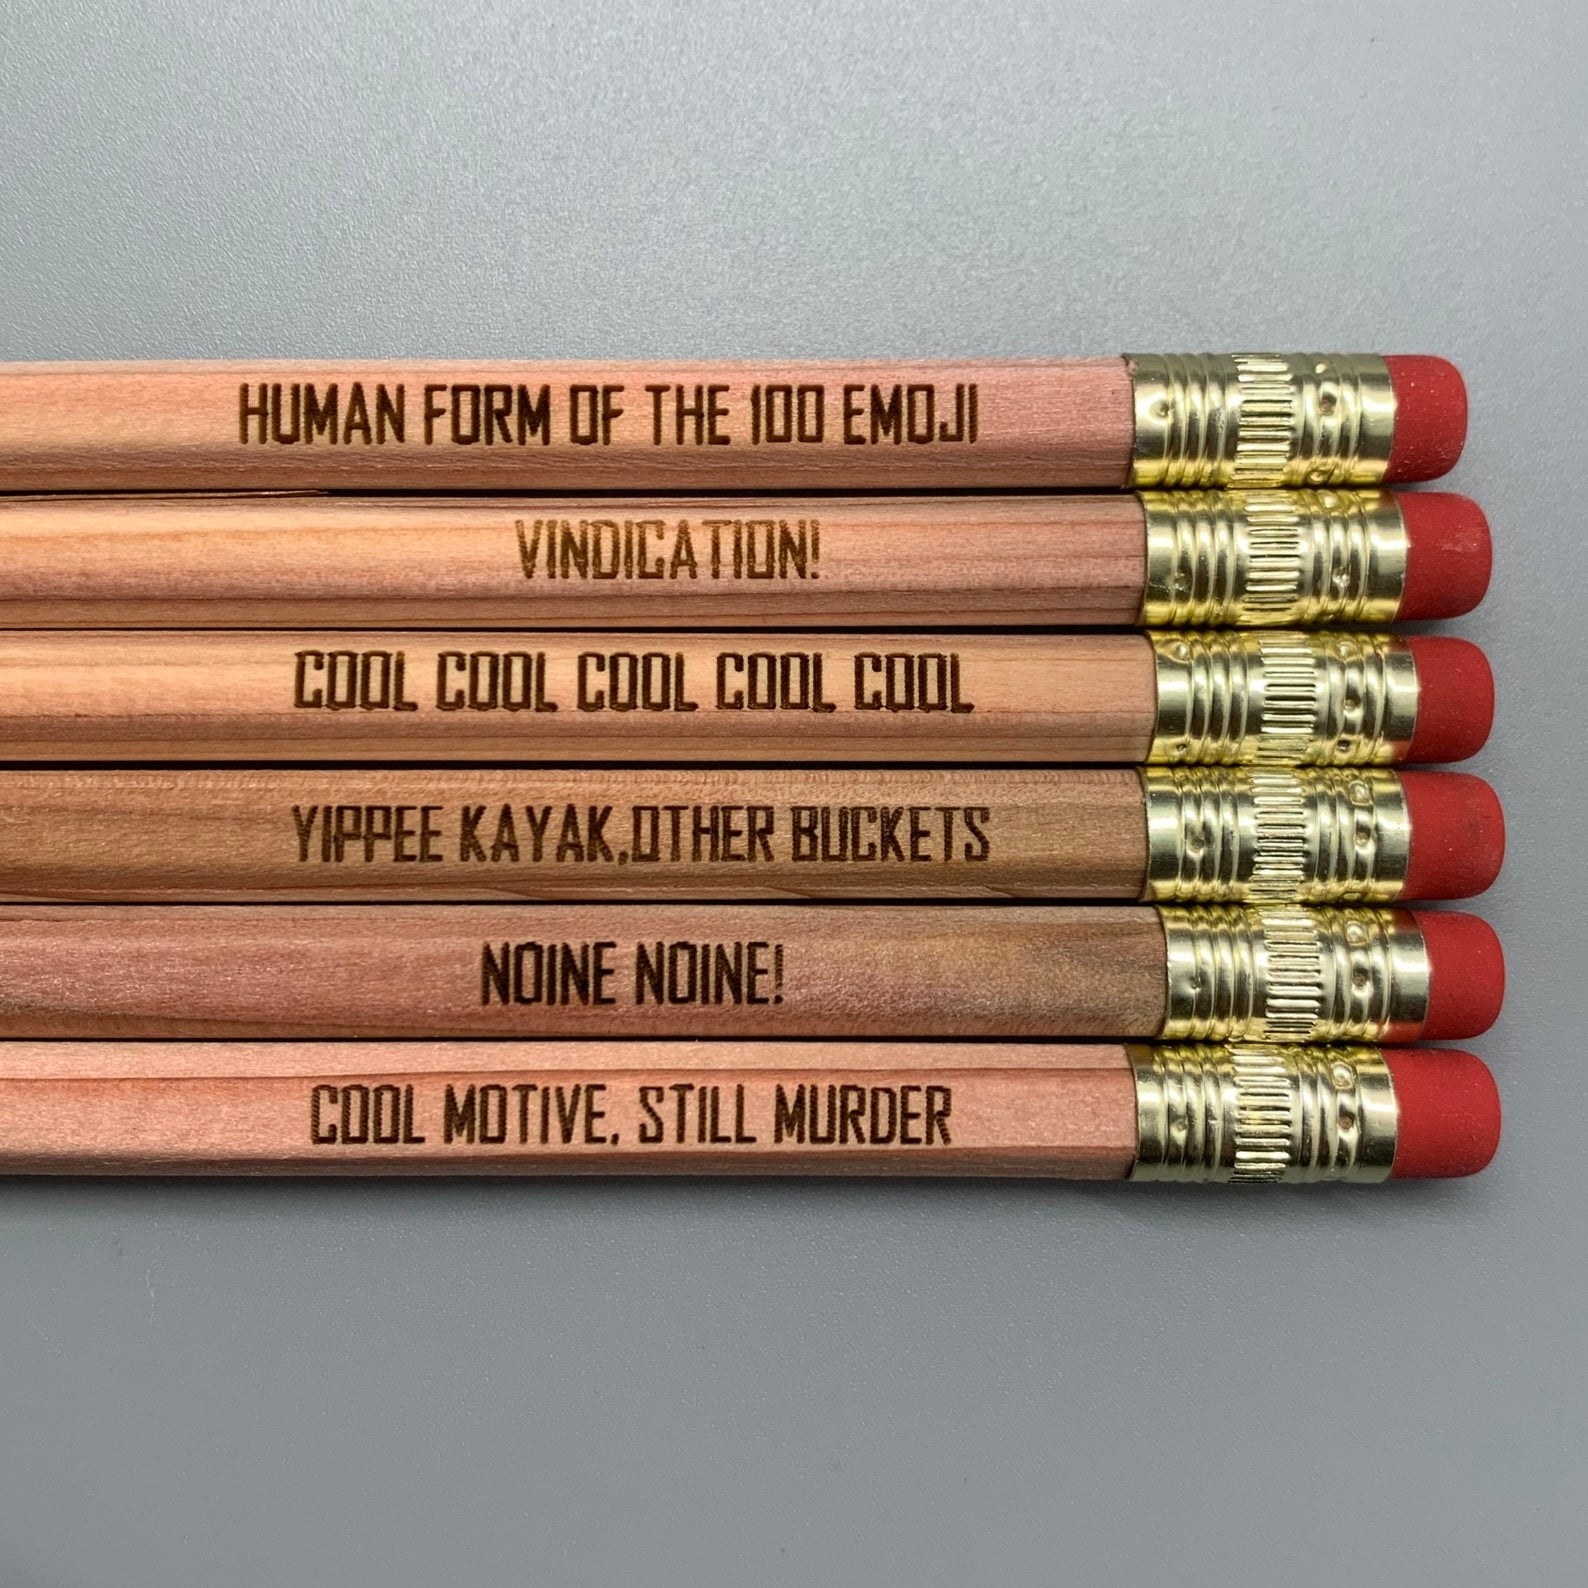 Pencil with quotes like &quot;vindication!,&quot; &quot;noine noine!&quot; and &quot;cool motive, still muder&quot;